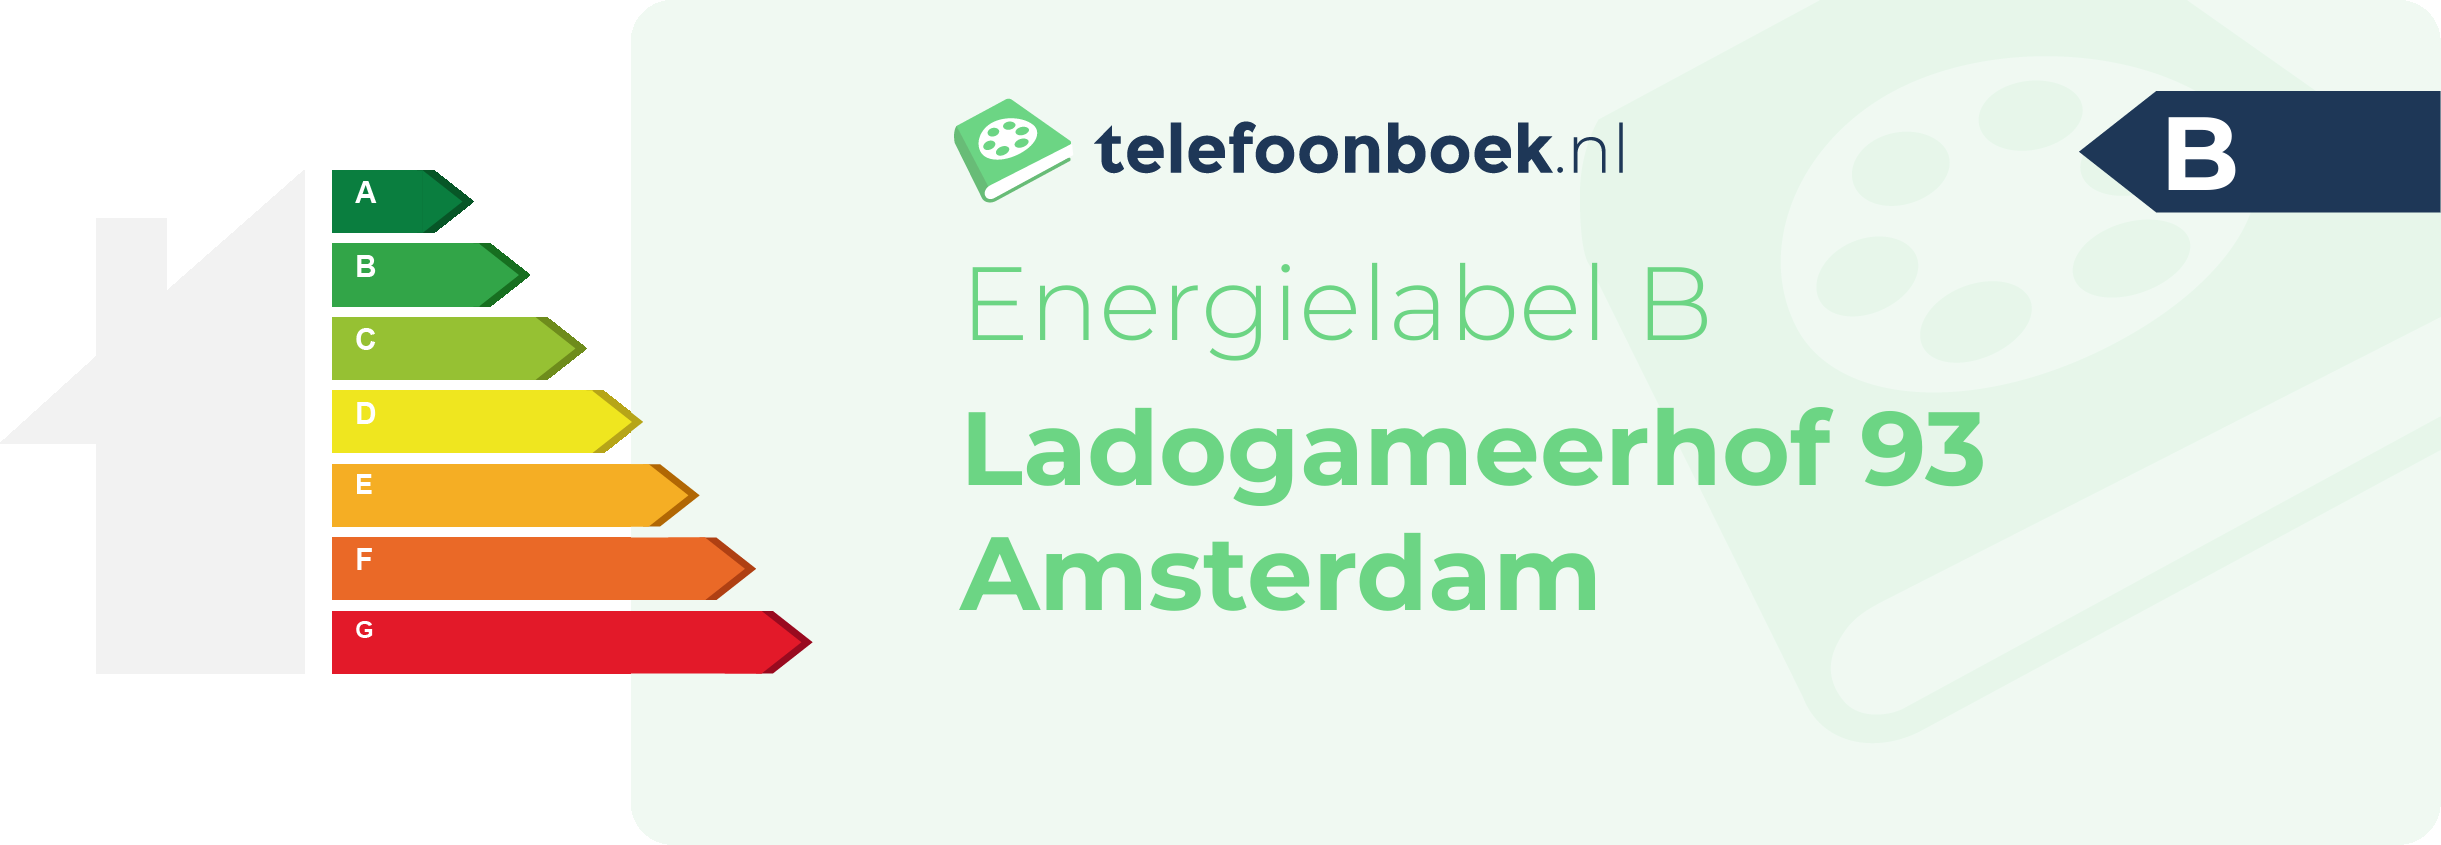 Energielabel Ladogameerhof 93 Amsterdam